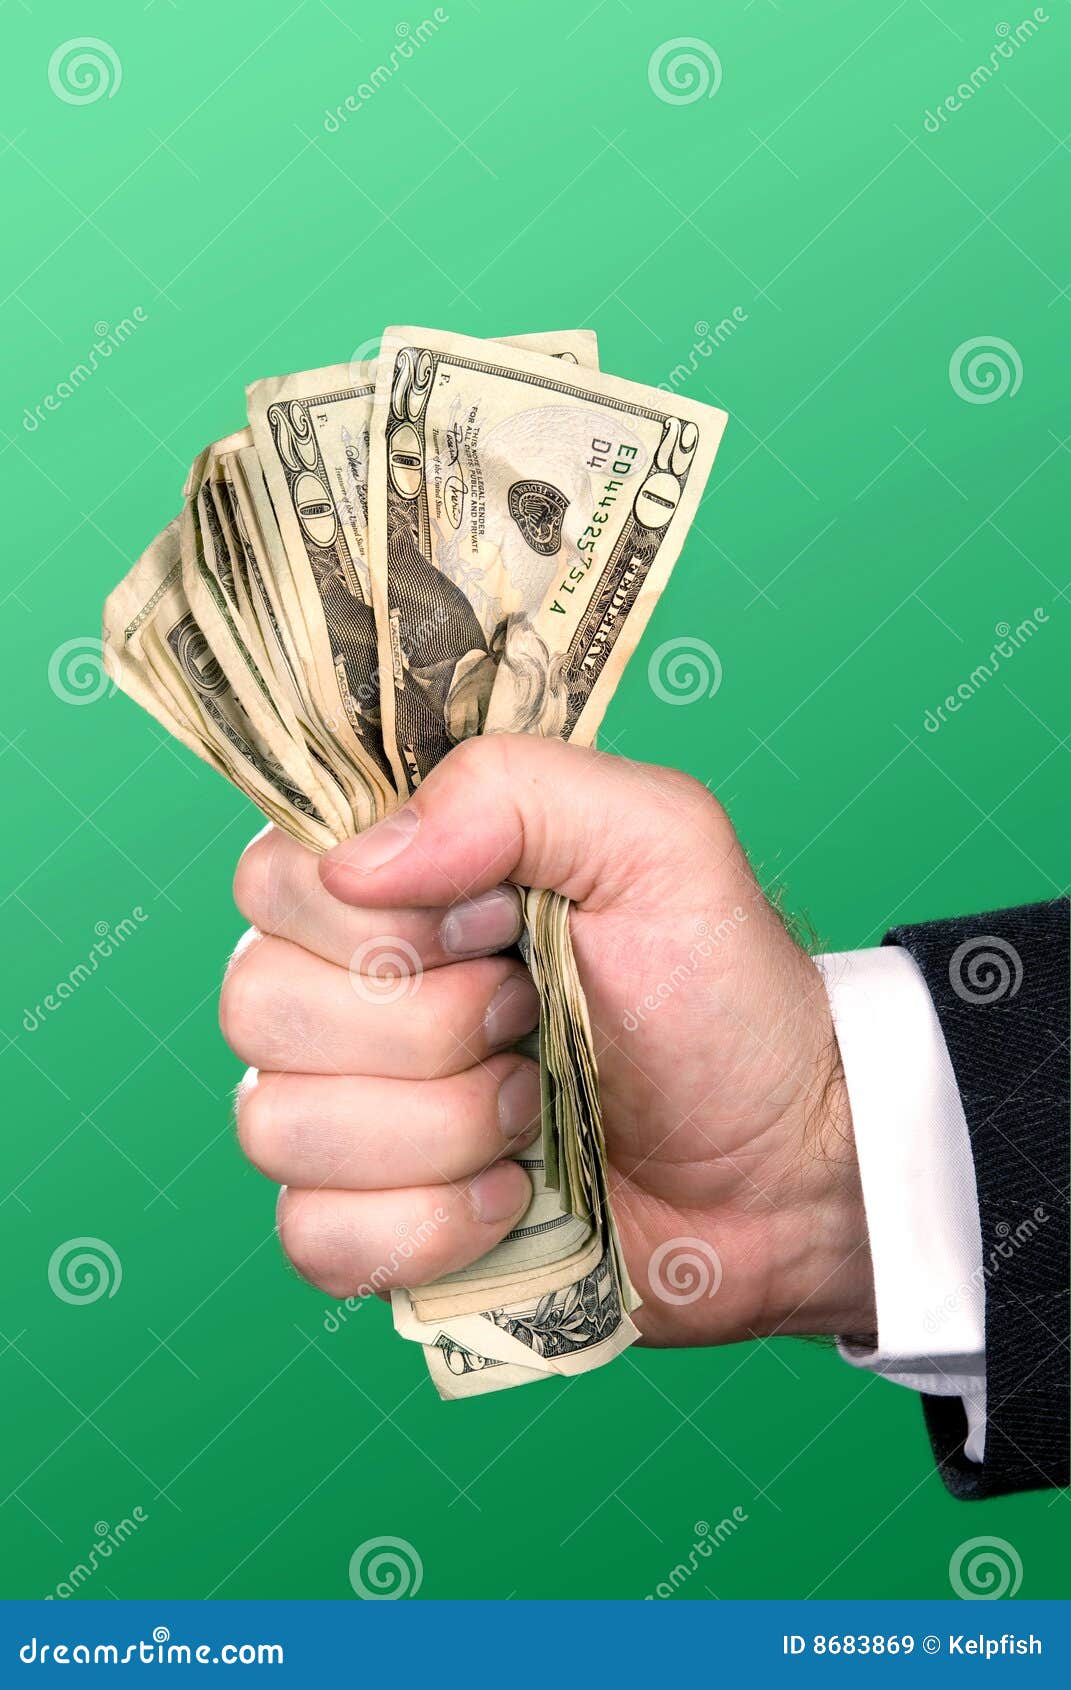 businessman squeezing cash